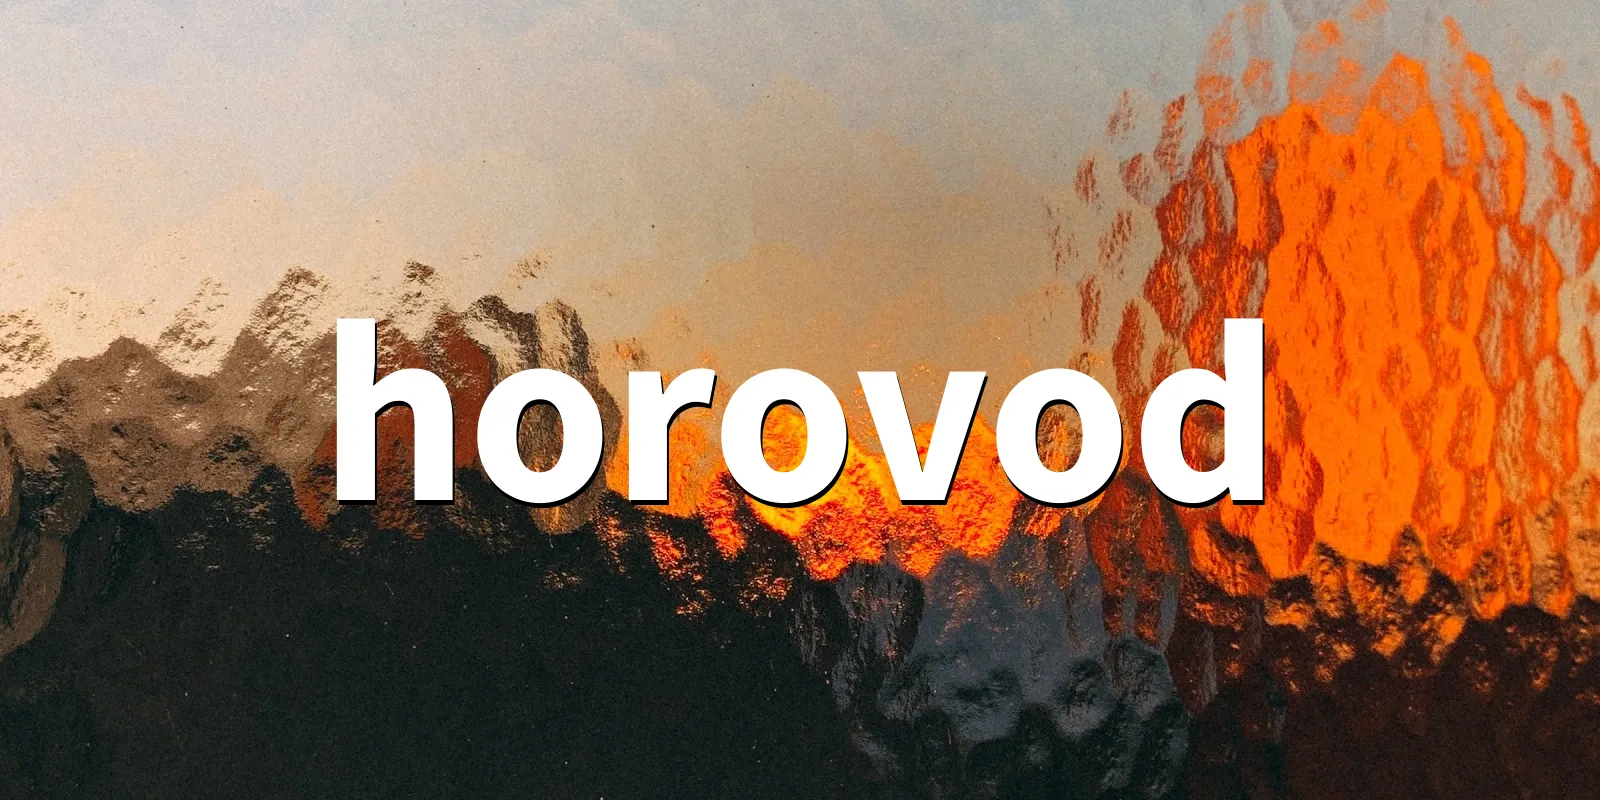 /pkg/h/horovod/horovod-banner.webp